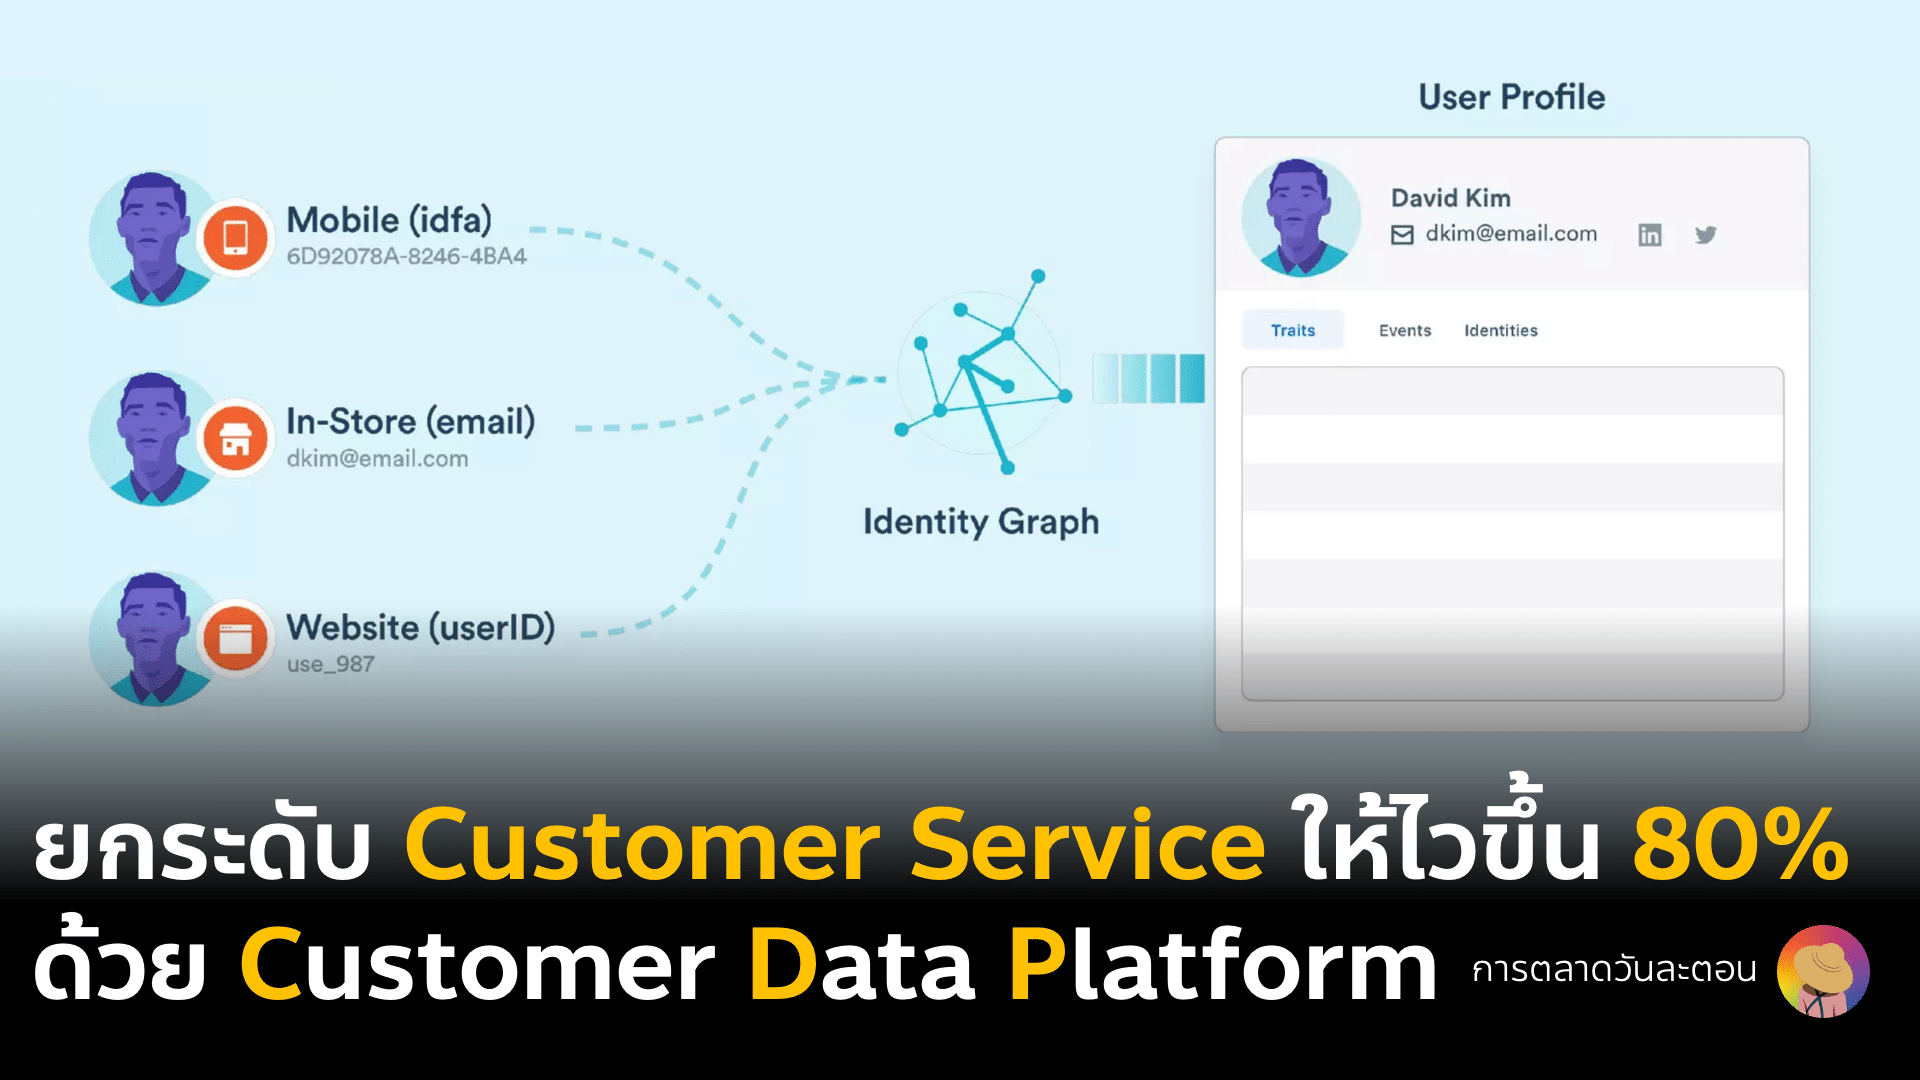 Case Study การใช้ CDP Customer data platform ของทีม Customer Service ที่สามารถแก้ปัญหาลูกค้าได้ไวขึ้น 80% เพราะเห็น log journey ที่ชัดเจน